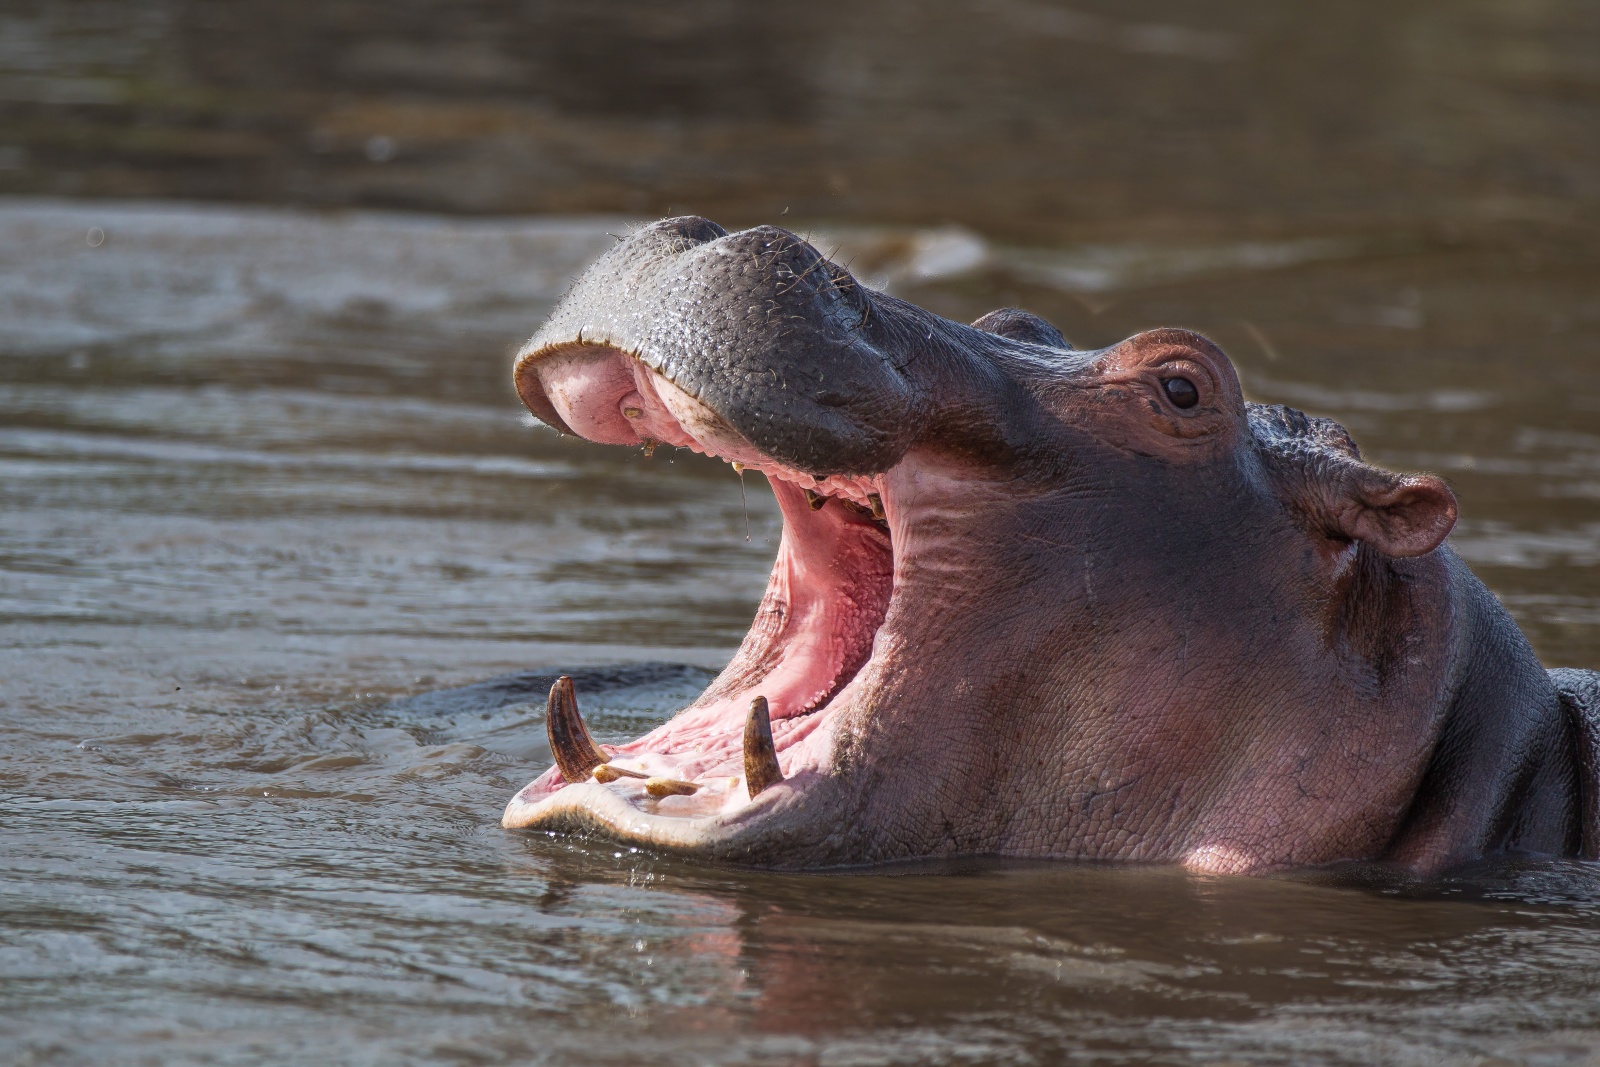 Tanzania 2012 - Hippo pool